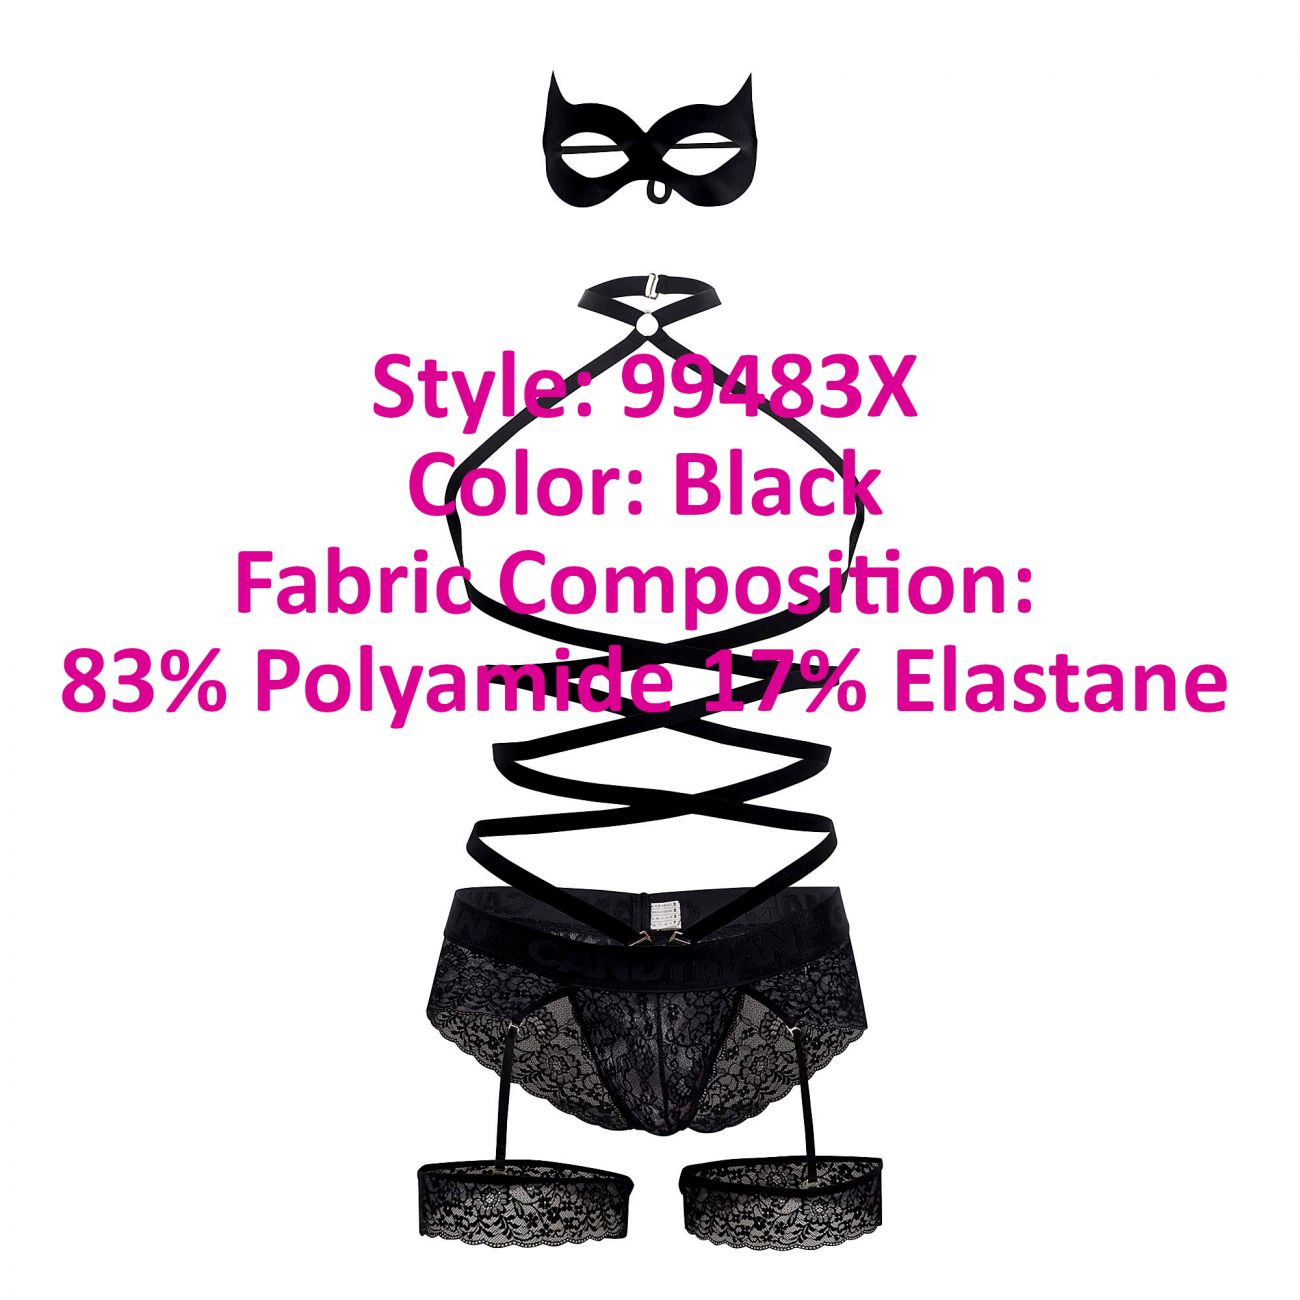 CandyMan 99483X Lace Garter Bodysuit Black Plus Sizes